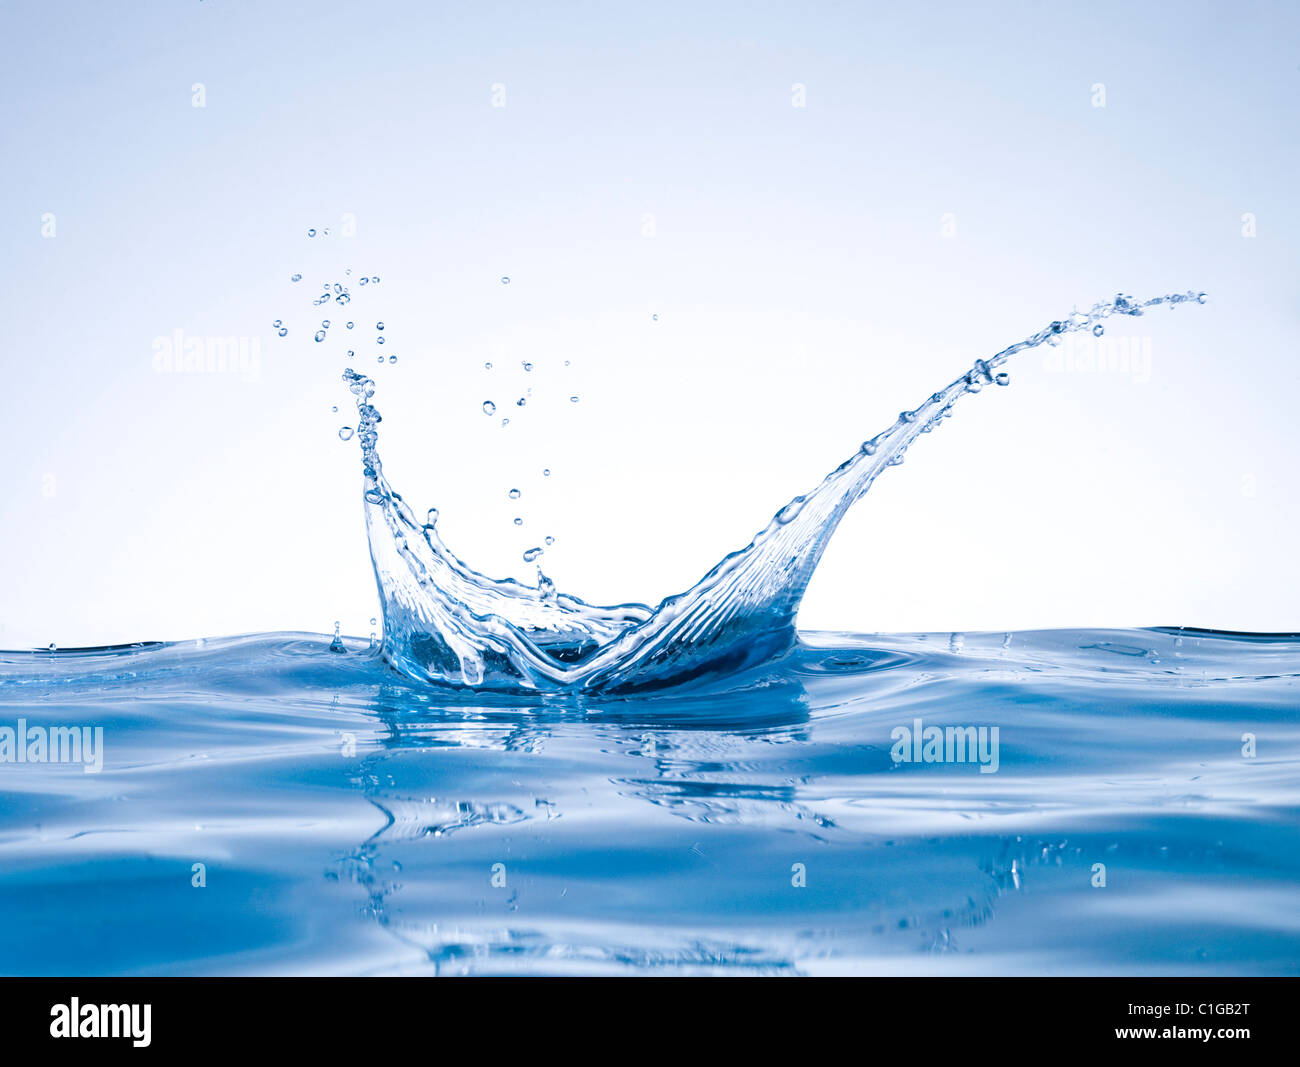 Color azul abstracto water splash crown forma aislado sobre fondo blanco limpio, Foto de estudio de gran tamaño y resolución Foto de stock